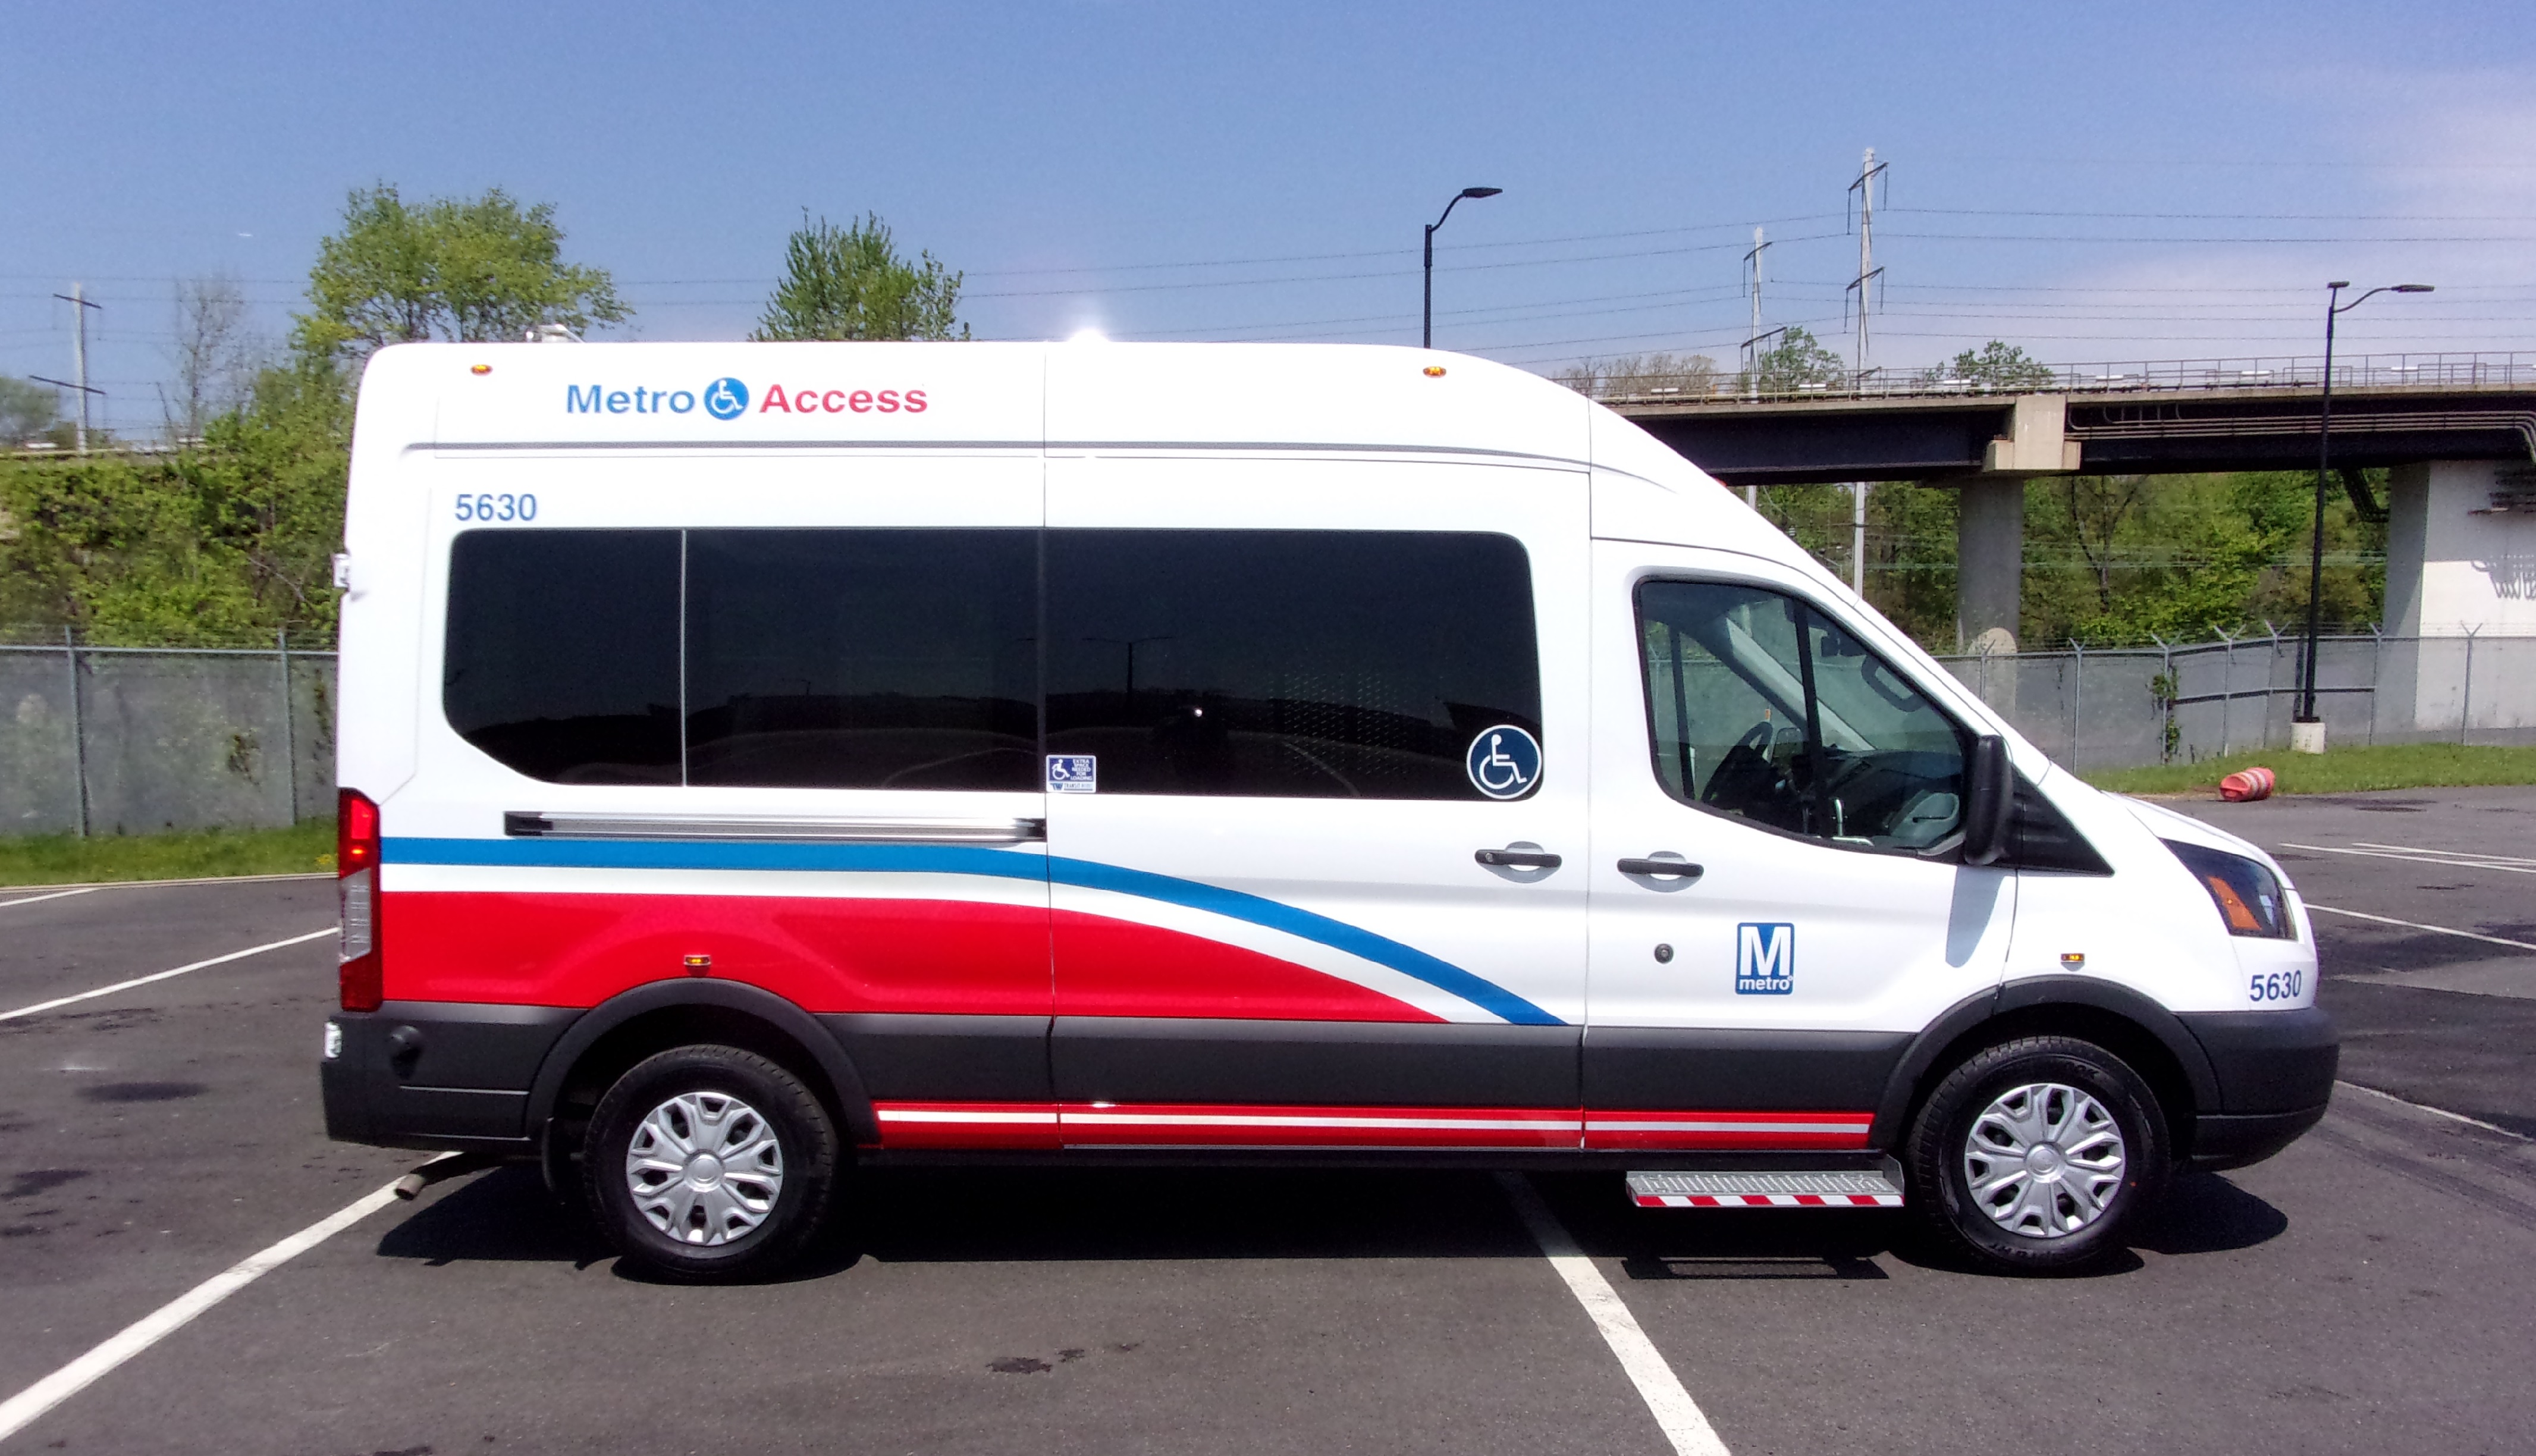 MetroAccess van added to fleet in 2017